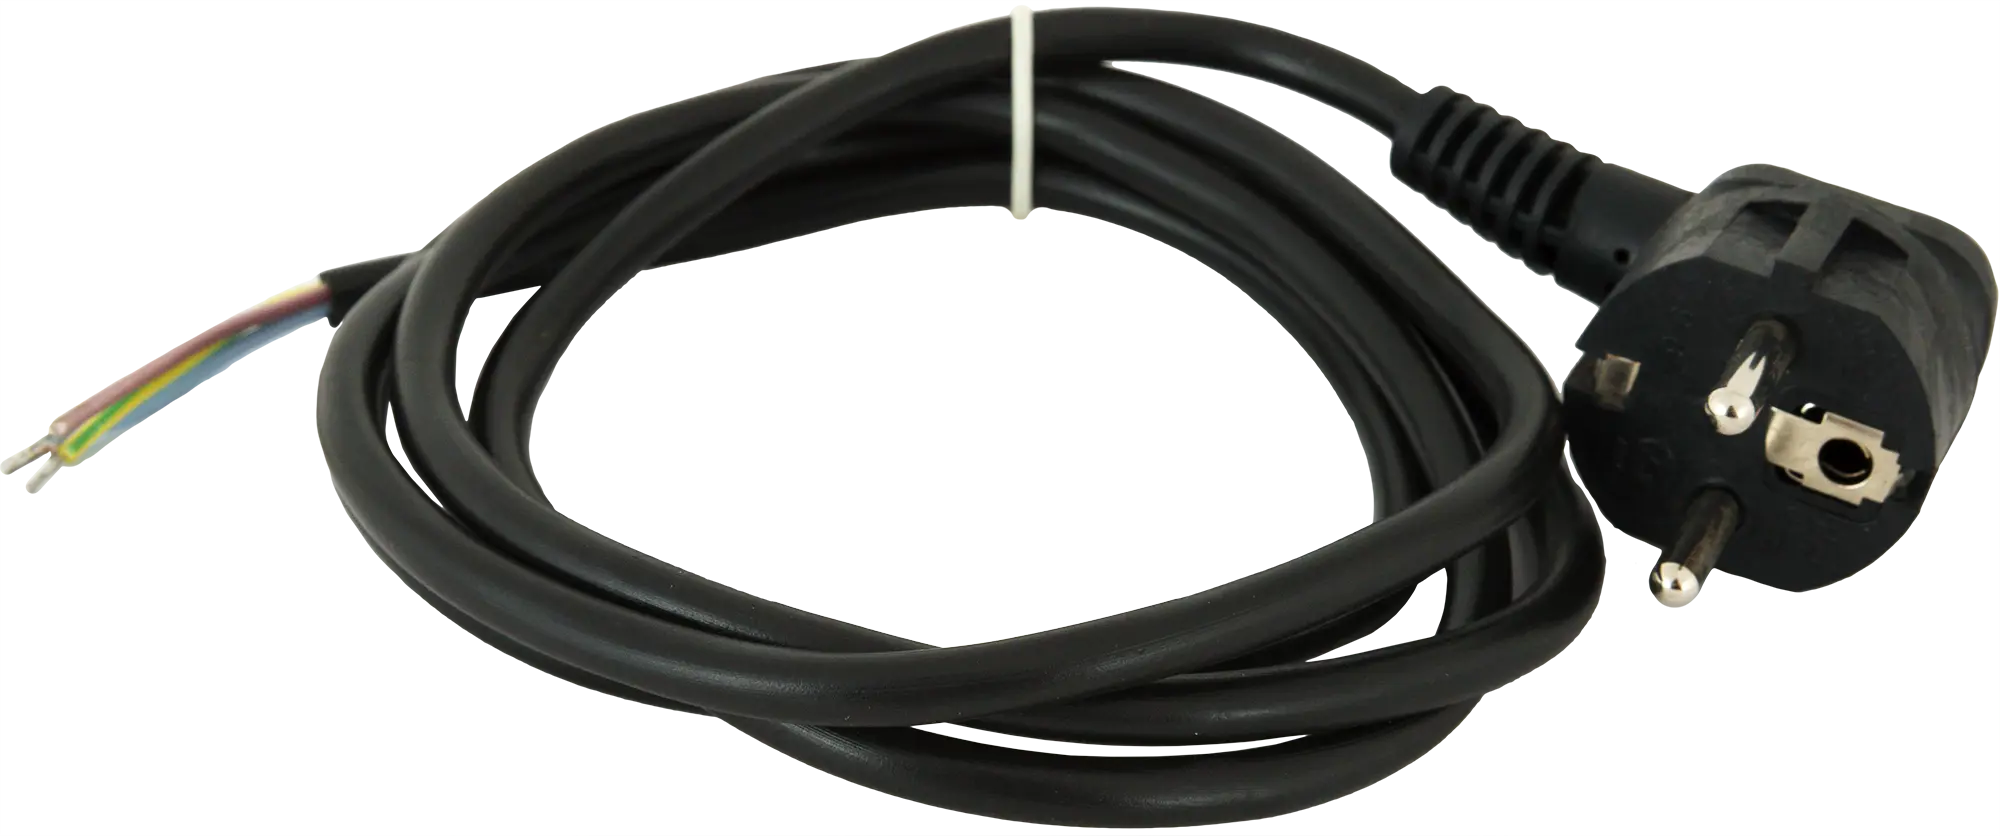 Шнур сетевой с заземлением 16 A 1.5 м цвет чёрный сетевой шнур эра